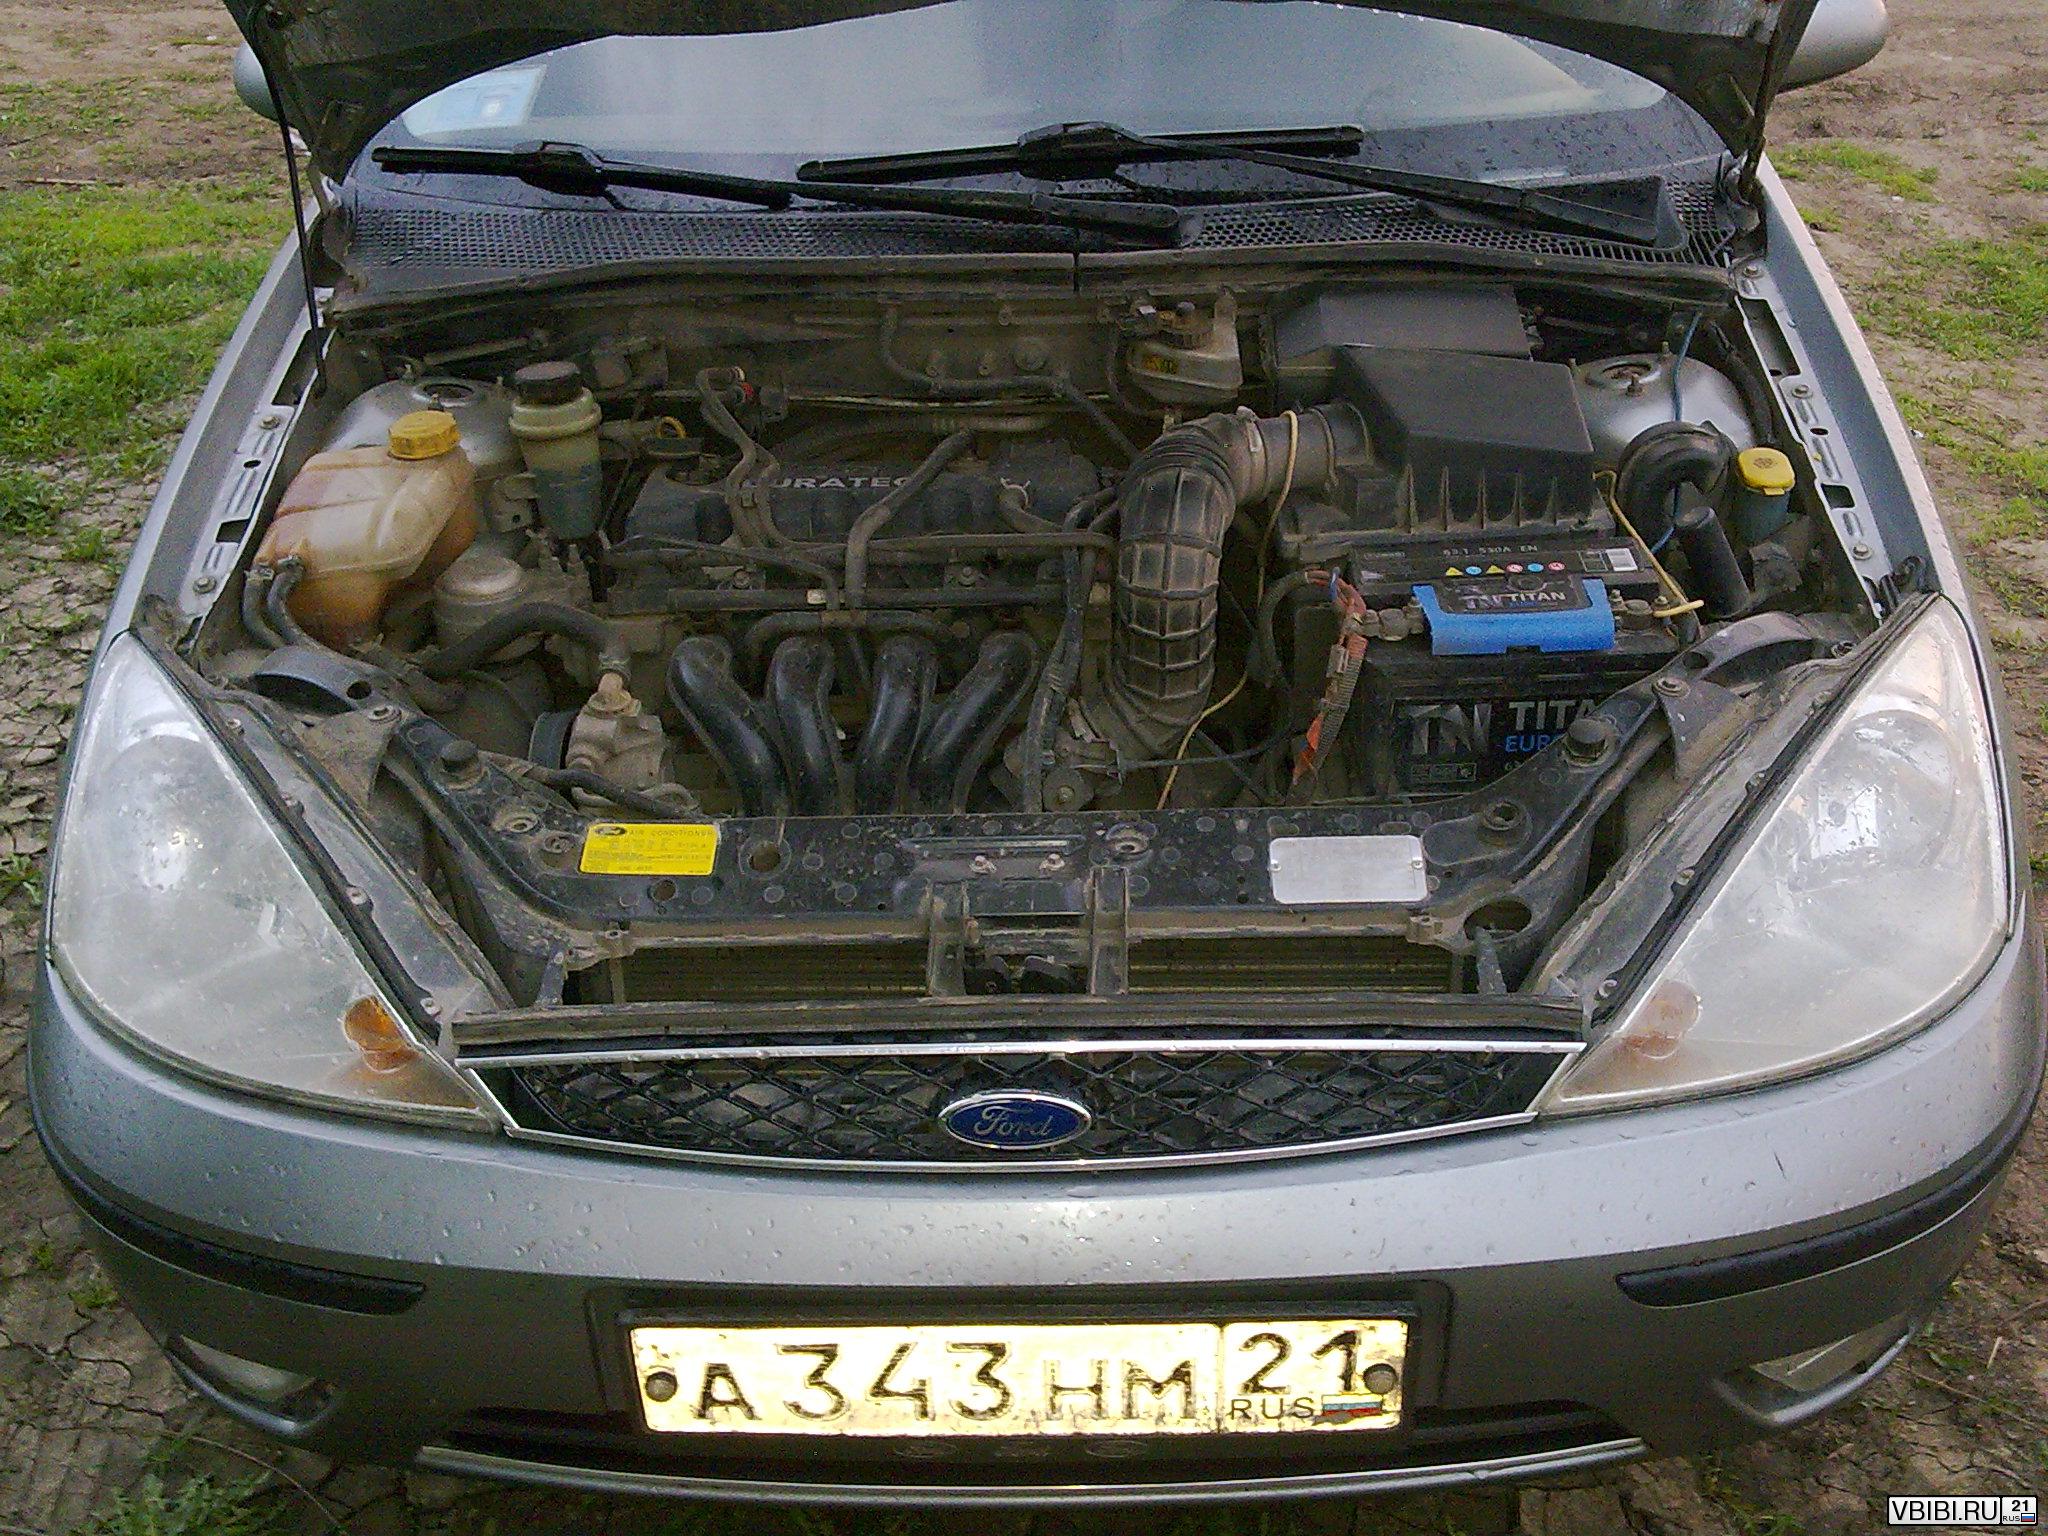 Двигатель Ford Duratec Ti-VCT 1.6 (115 л.с.) Фокус 2 ...